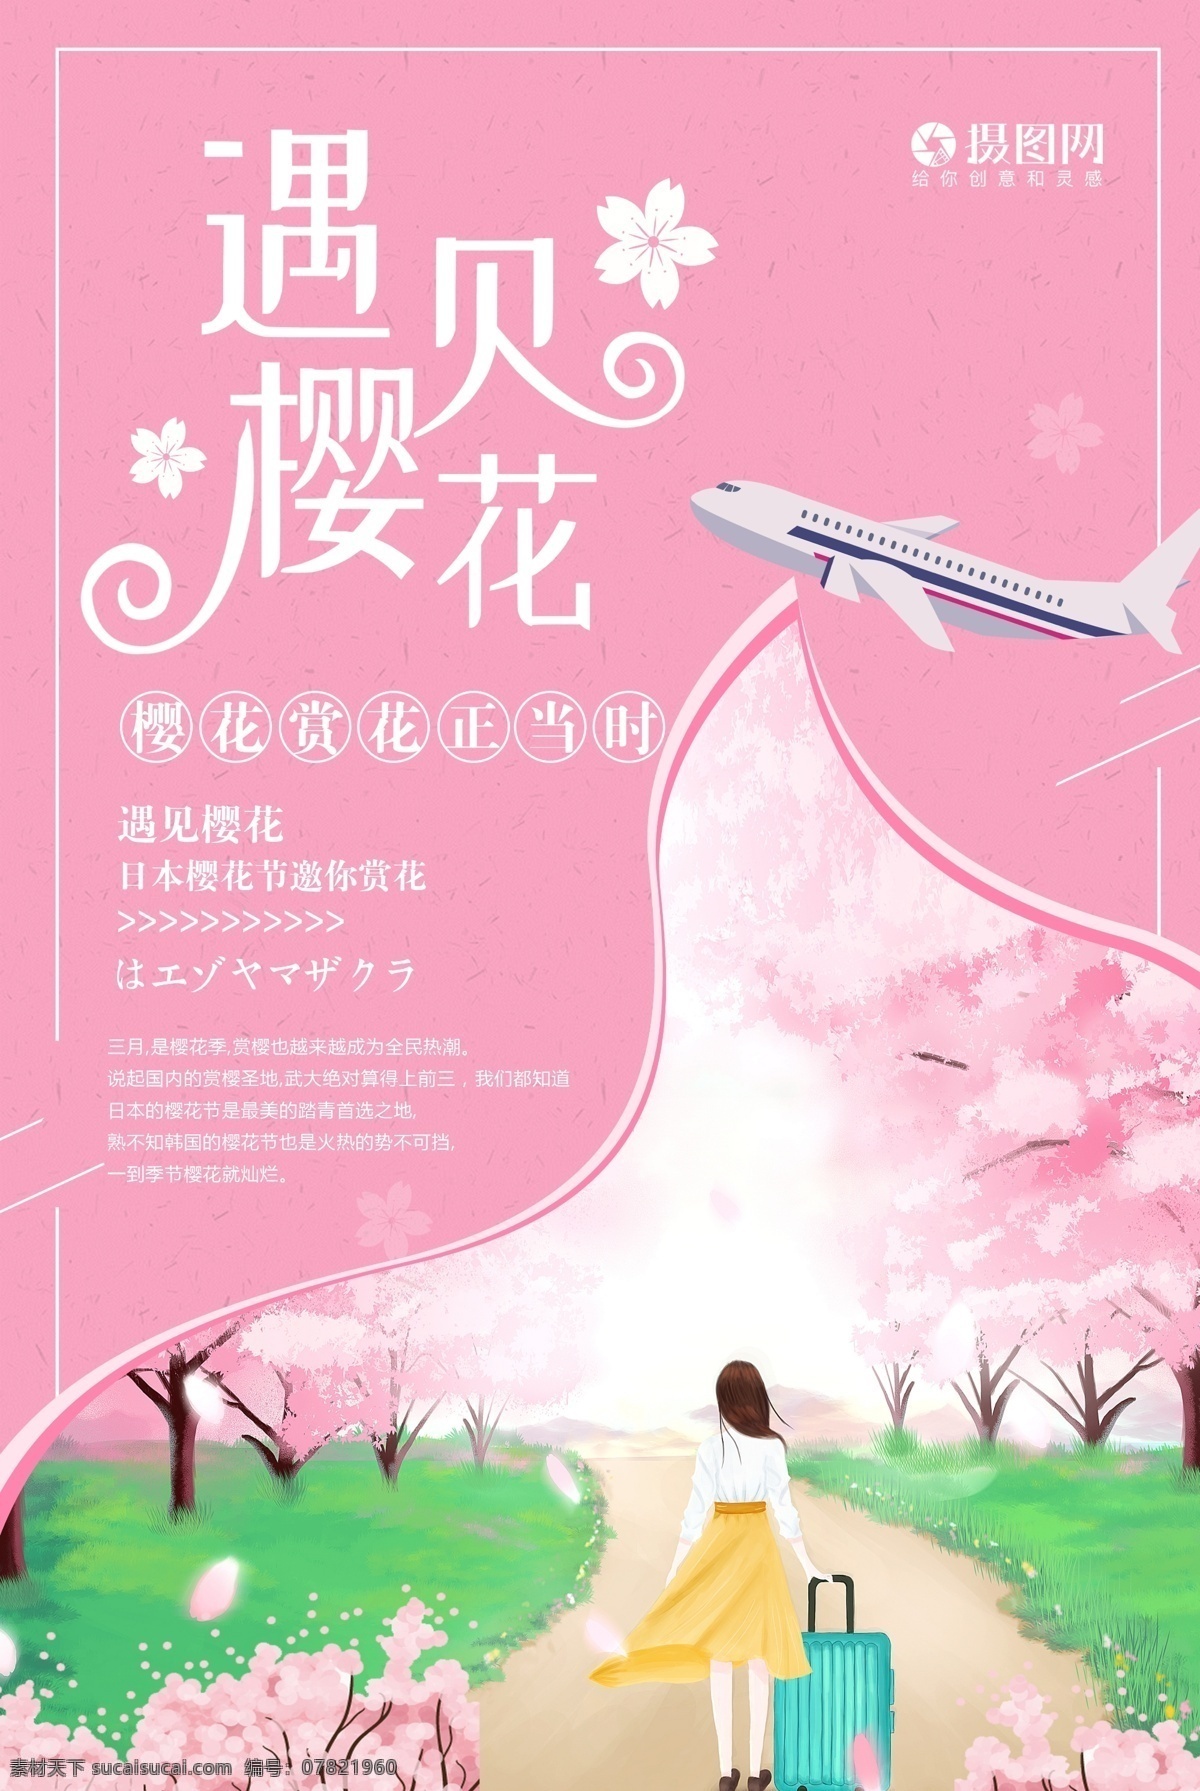 粉色 浪漫 遇见 樱花 海报 创意简洁 樱花节 唯美 旅游 日本樱花 樱花季 遇见樱花 醉美樱花 浪漫樱花 飞机 日本 旅行